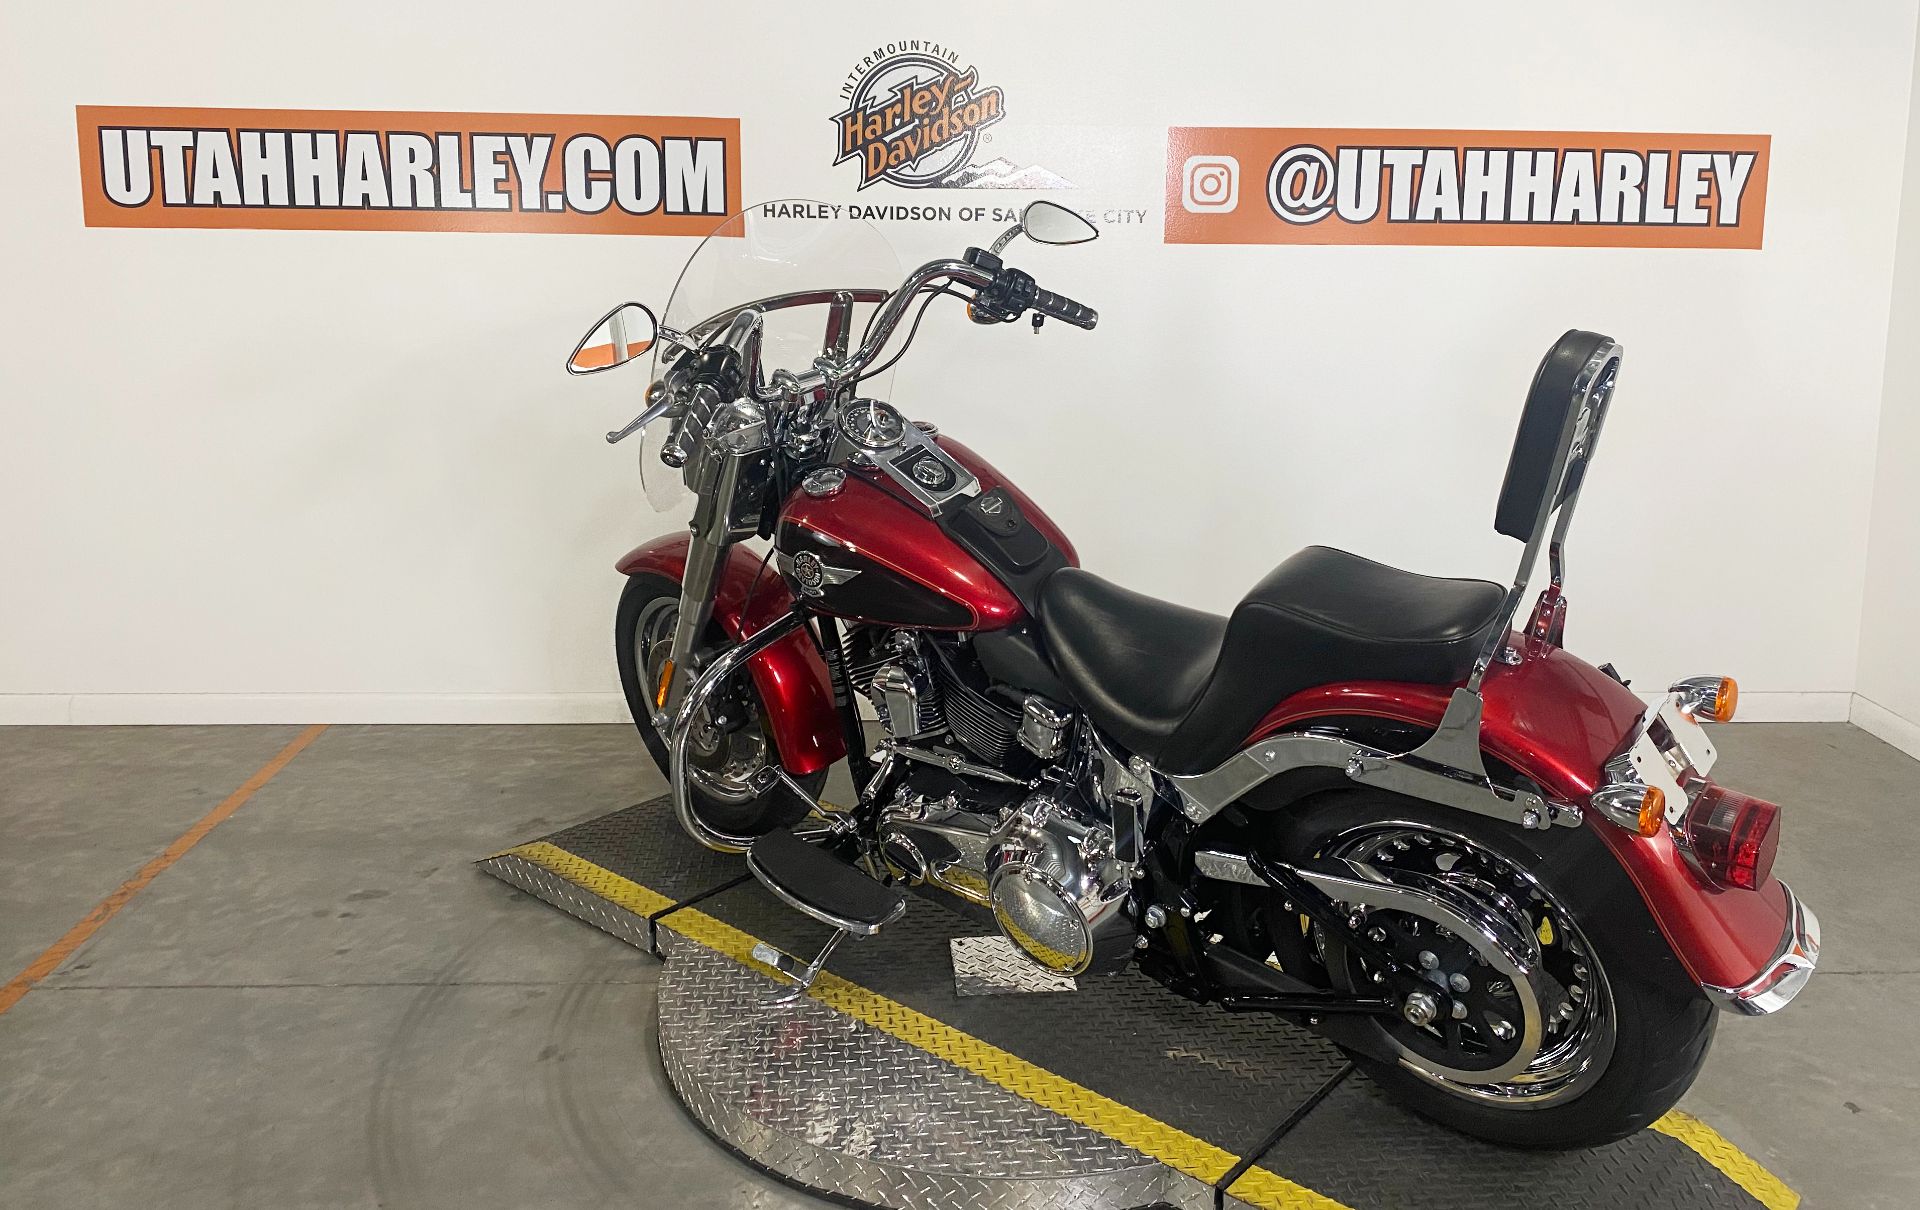 2013 Harley-Davidson Softail® Fat Boy® in Salt Lake City, Utah - Photo 6